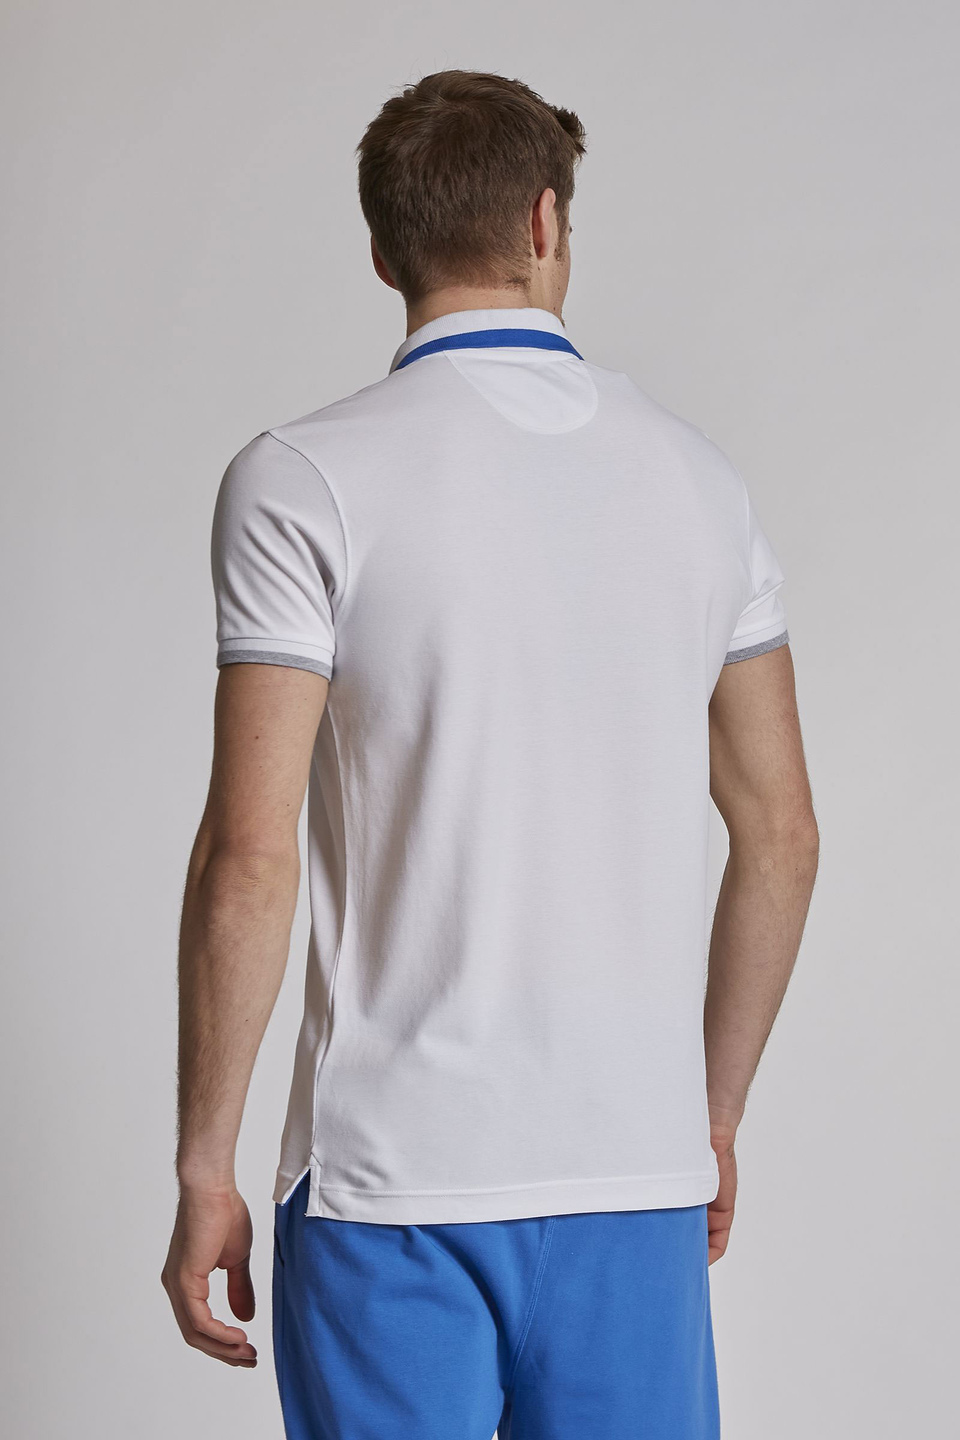 Herren-Poloshirt aus Stretch-Baumwolle mit kurzen Ärmeln im Slim Fit - La Martina - Official Online Shop